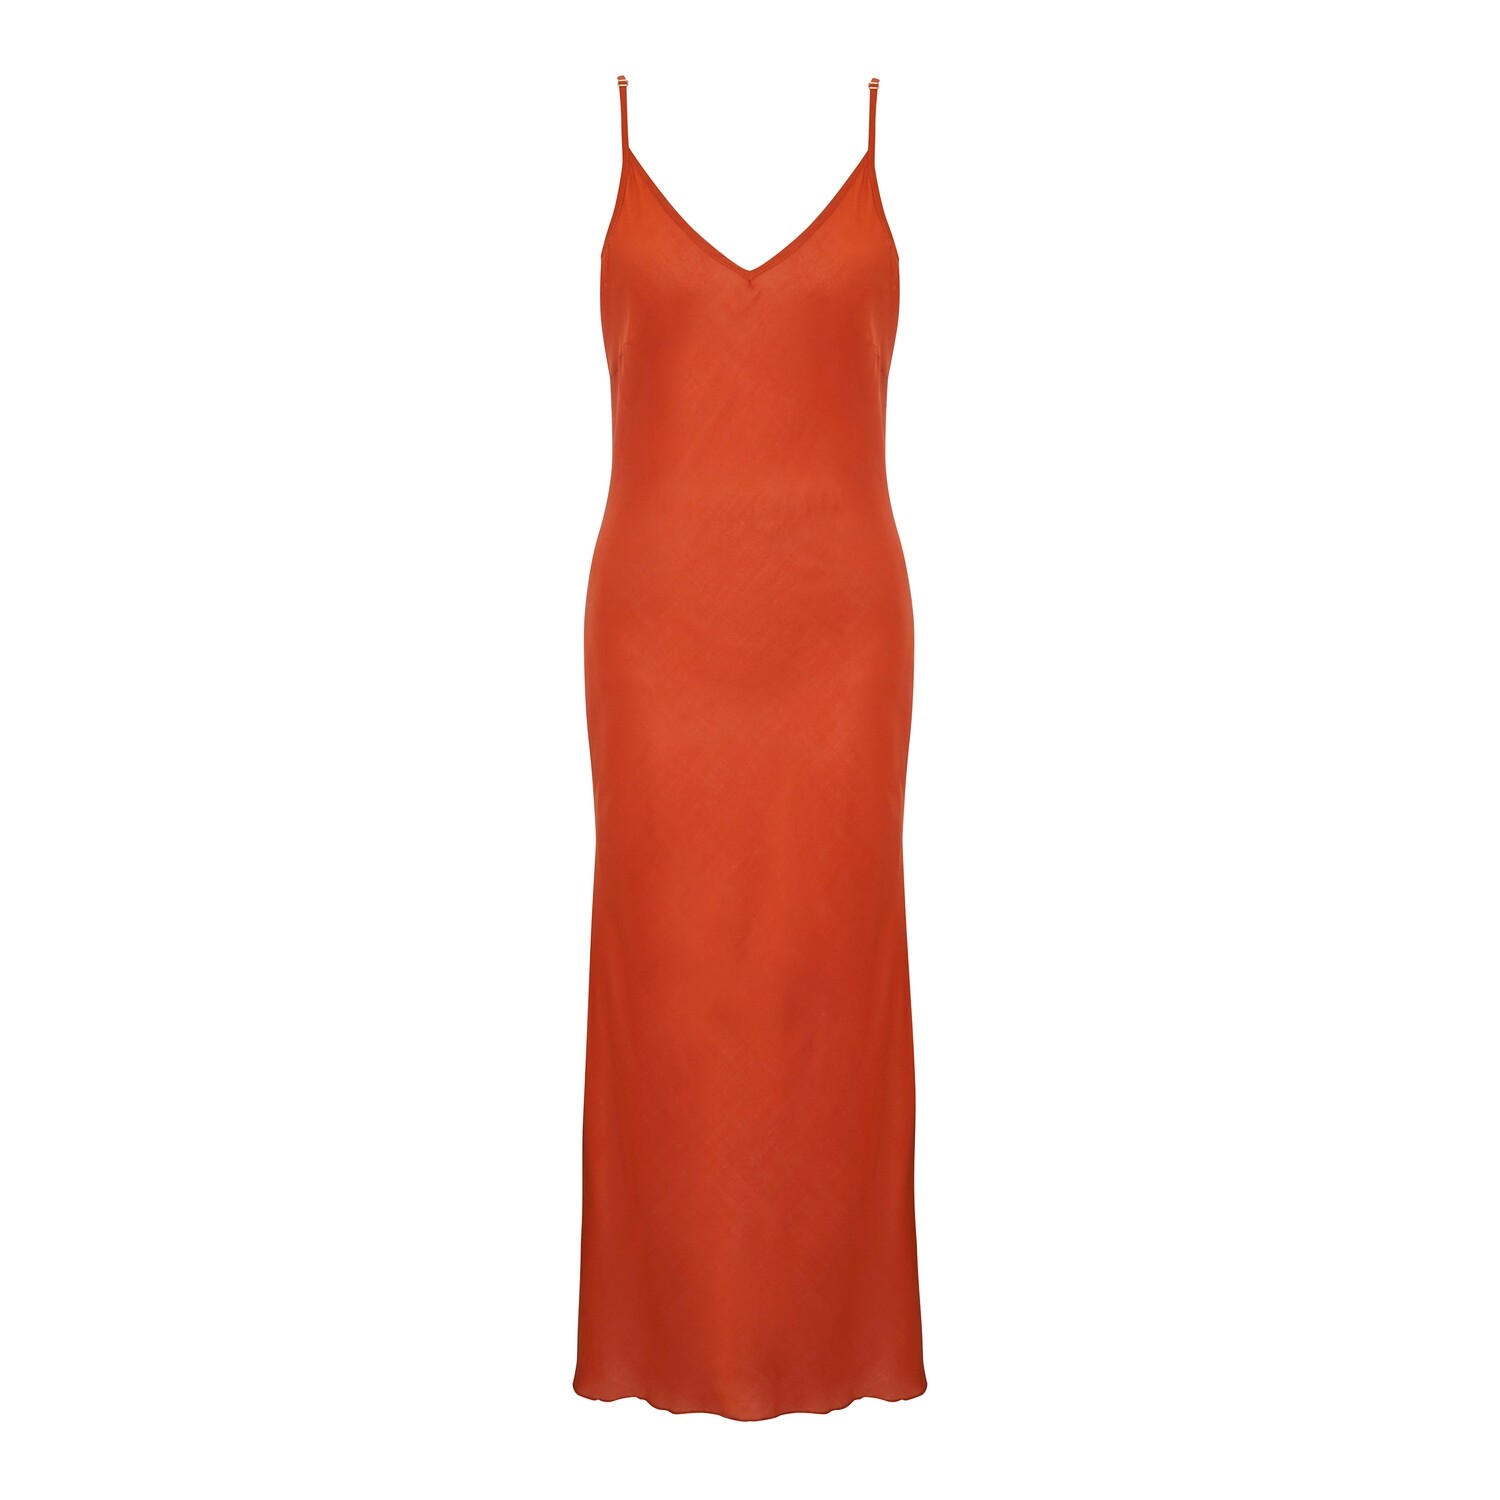 Платье-комбинация из модала оранжевое